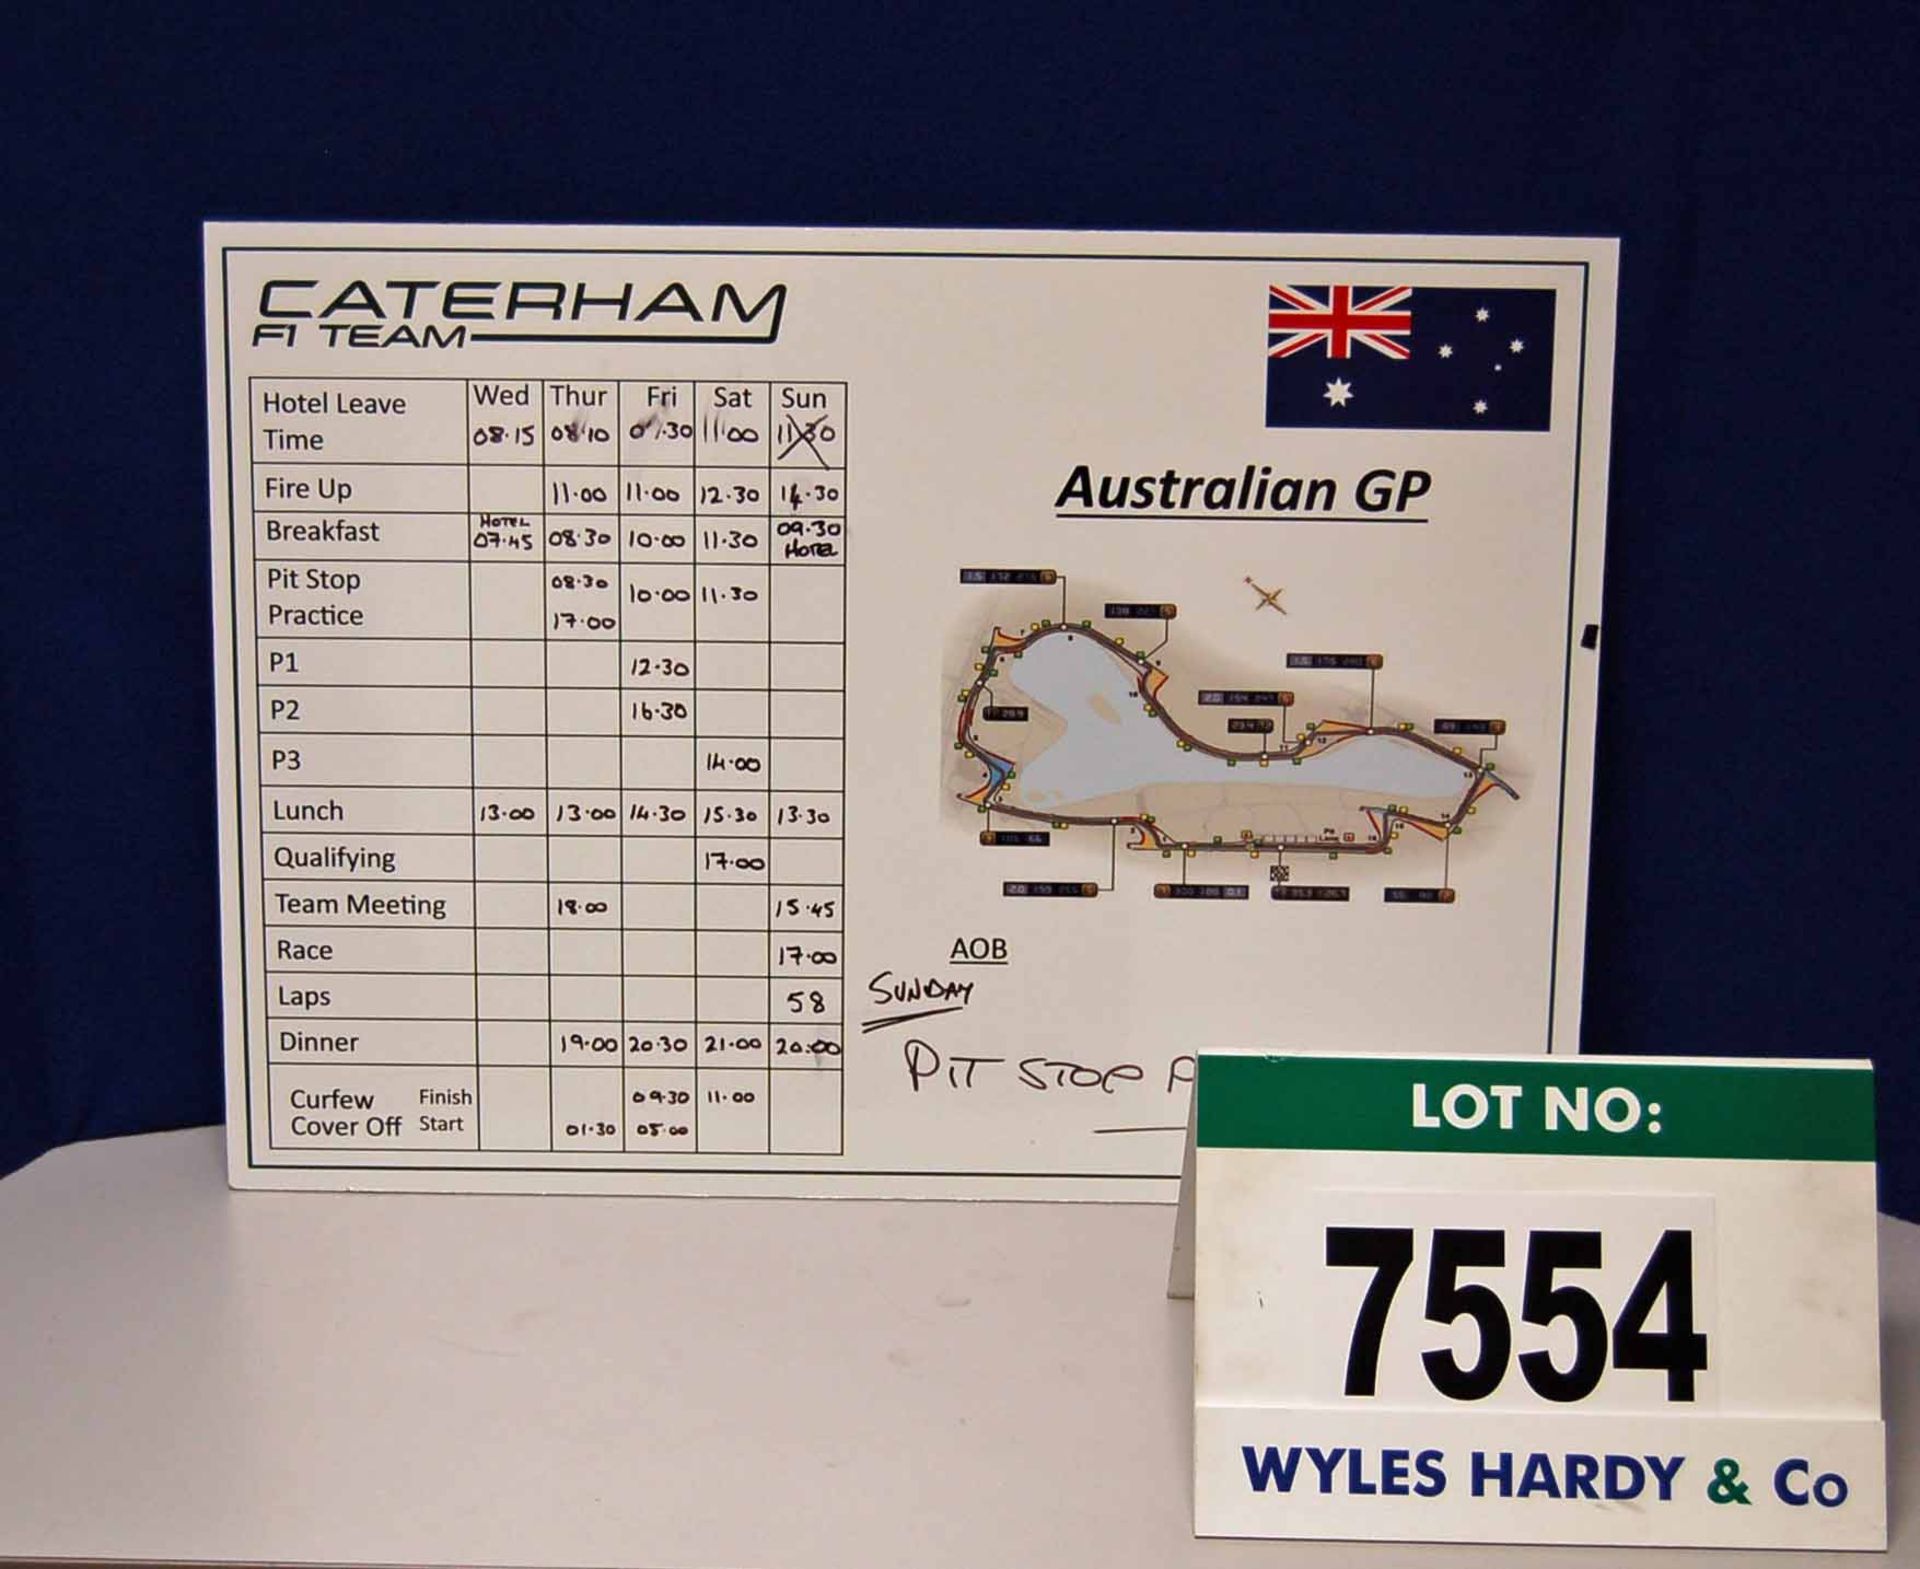 A CATERHAM F1 Team 500mm x 700mm Foamex Pit Crew Information Board - Australian Grand Prix  Want